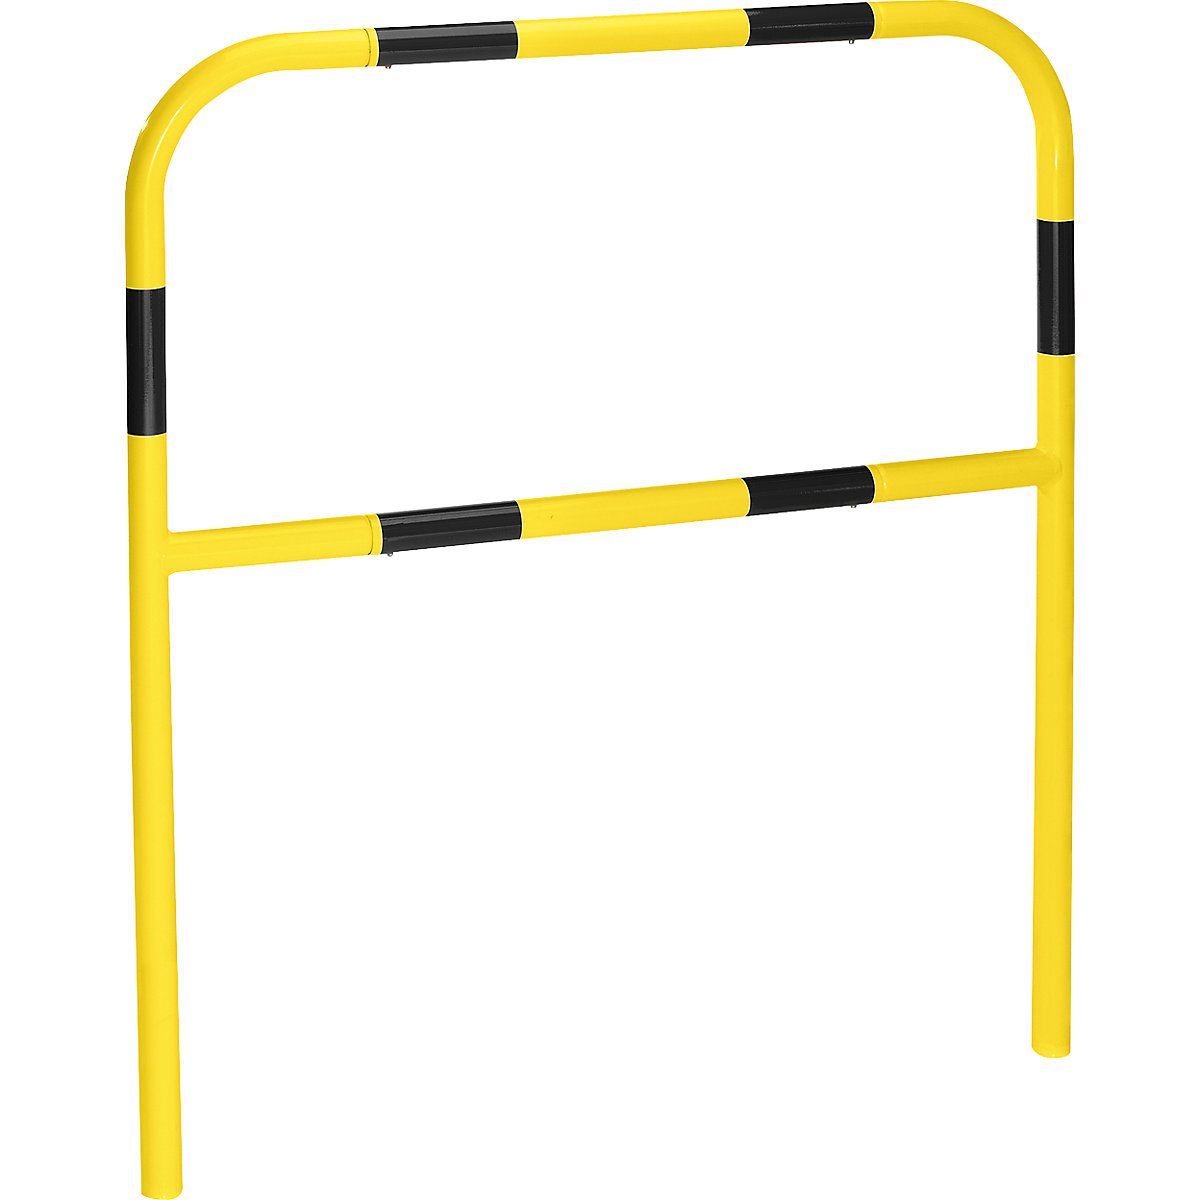 Sicherheitsbügel für Gefahrenzonen, zum Einbetonieren, gelb / schwarz, Breite 1000 mm